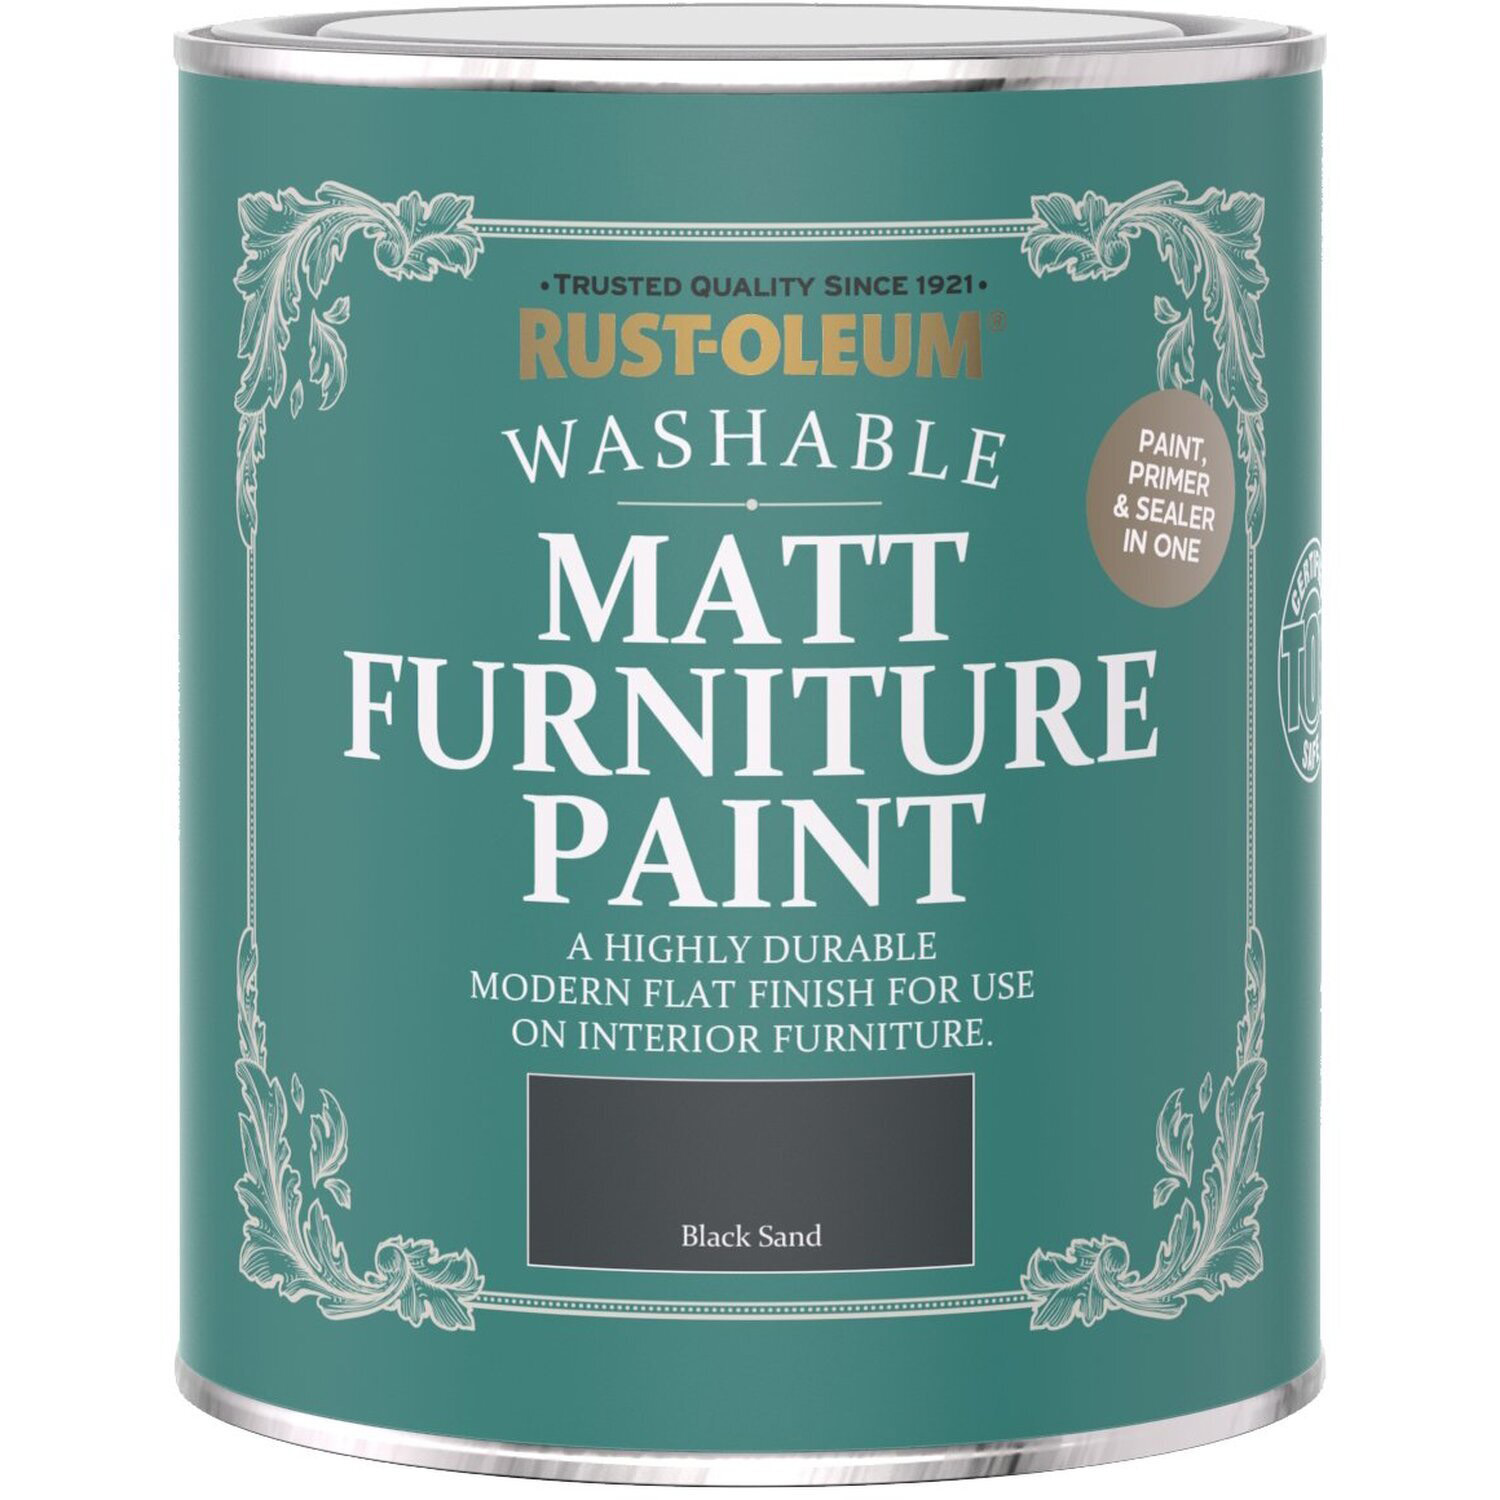 Rust-Oleum Black Sand Matt Furniture Paint 750ml Image 2